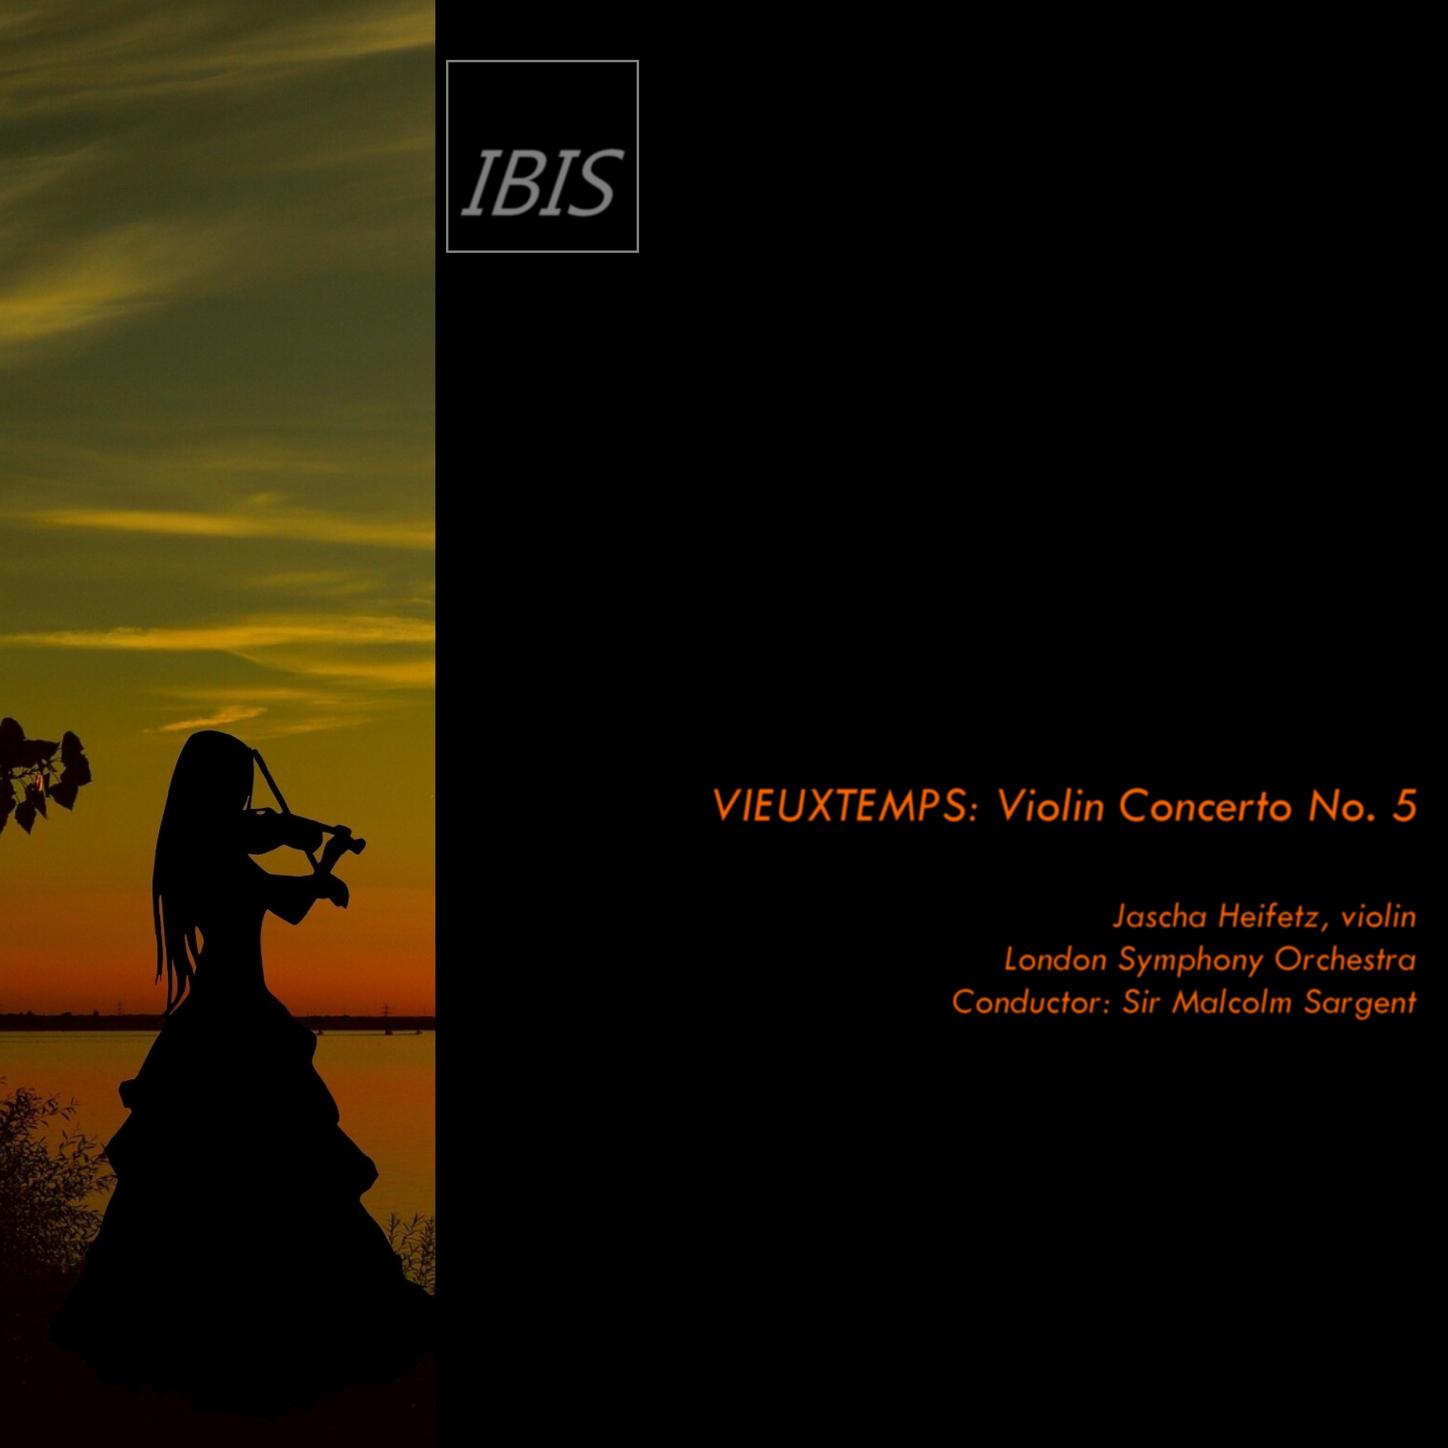 Vieuxtemps: Violin Concerto No.5, Op. 37: II. Adagio